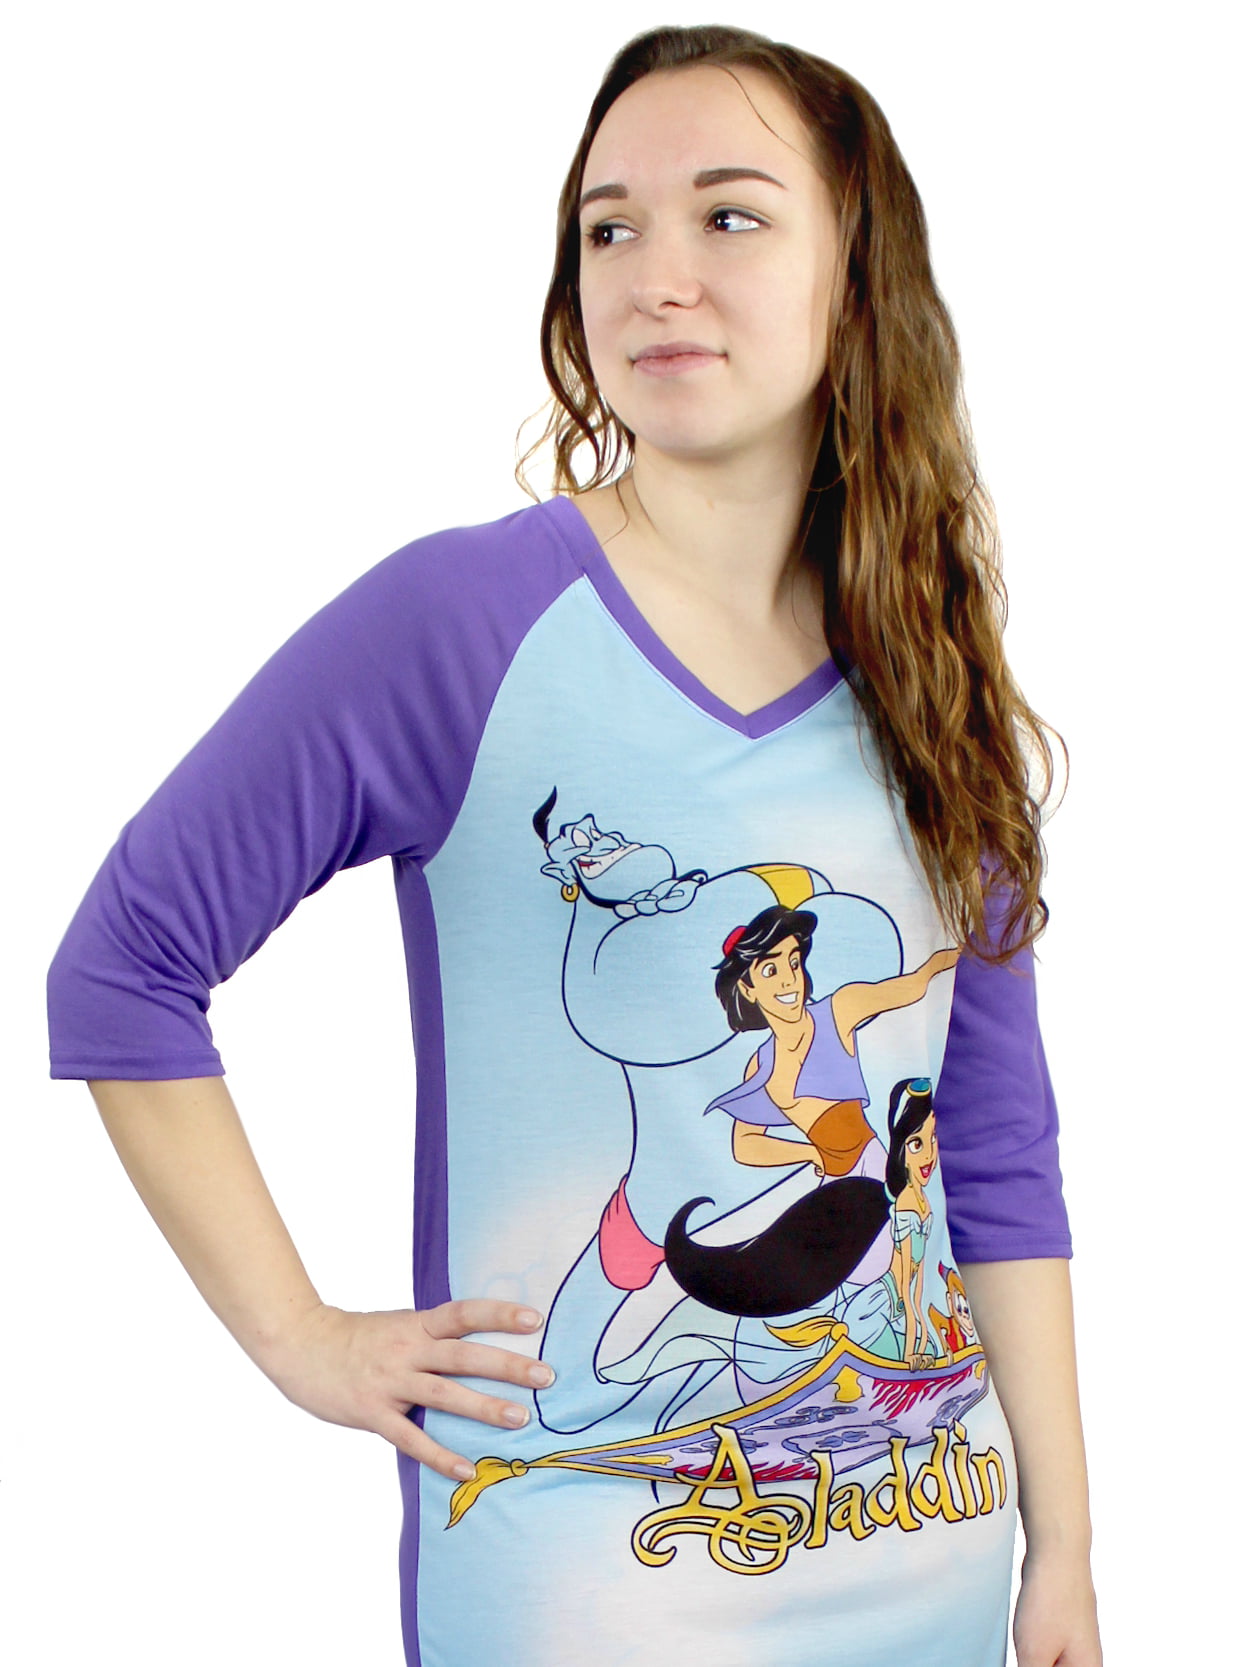 Disney Store Aladdin Princess Jasmine Long Sleeves Nightgown Pajama Nightshirt 